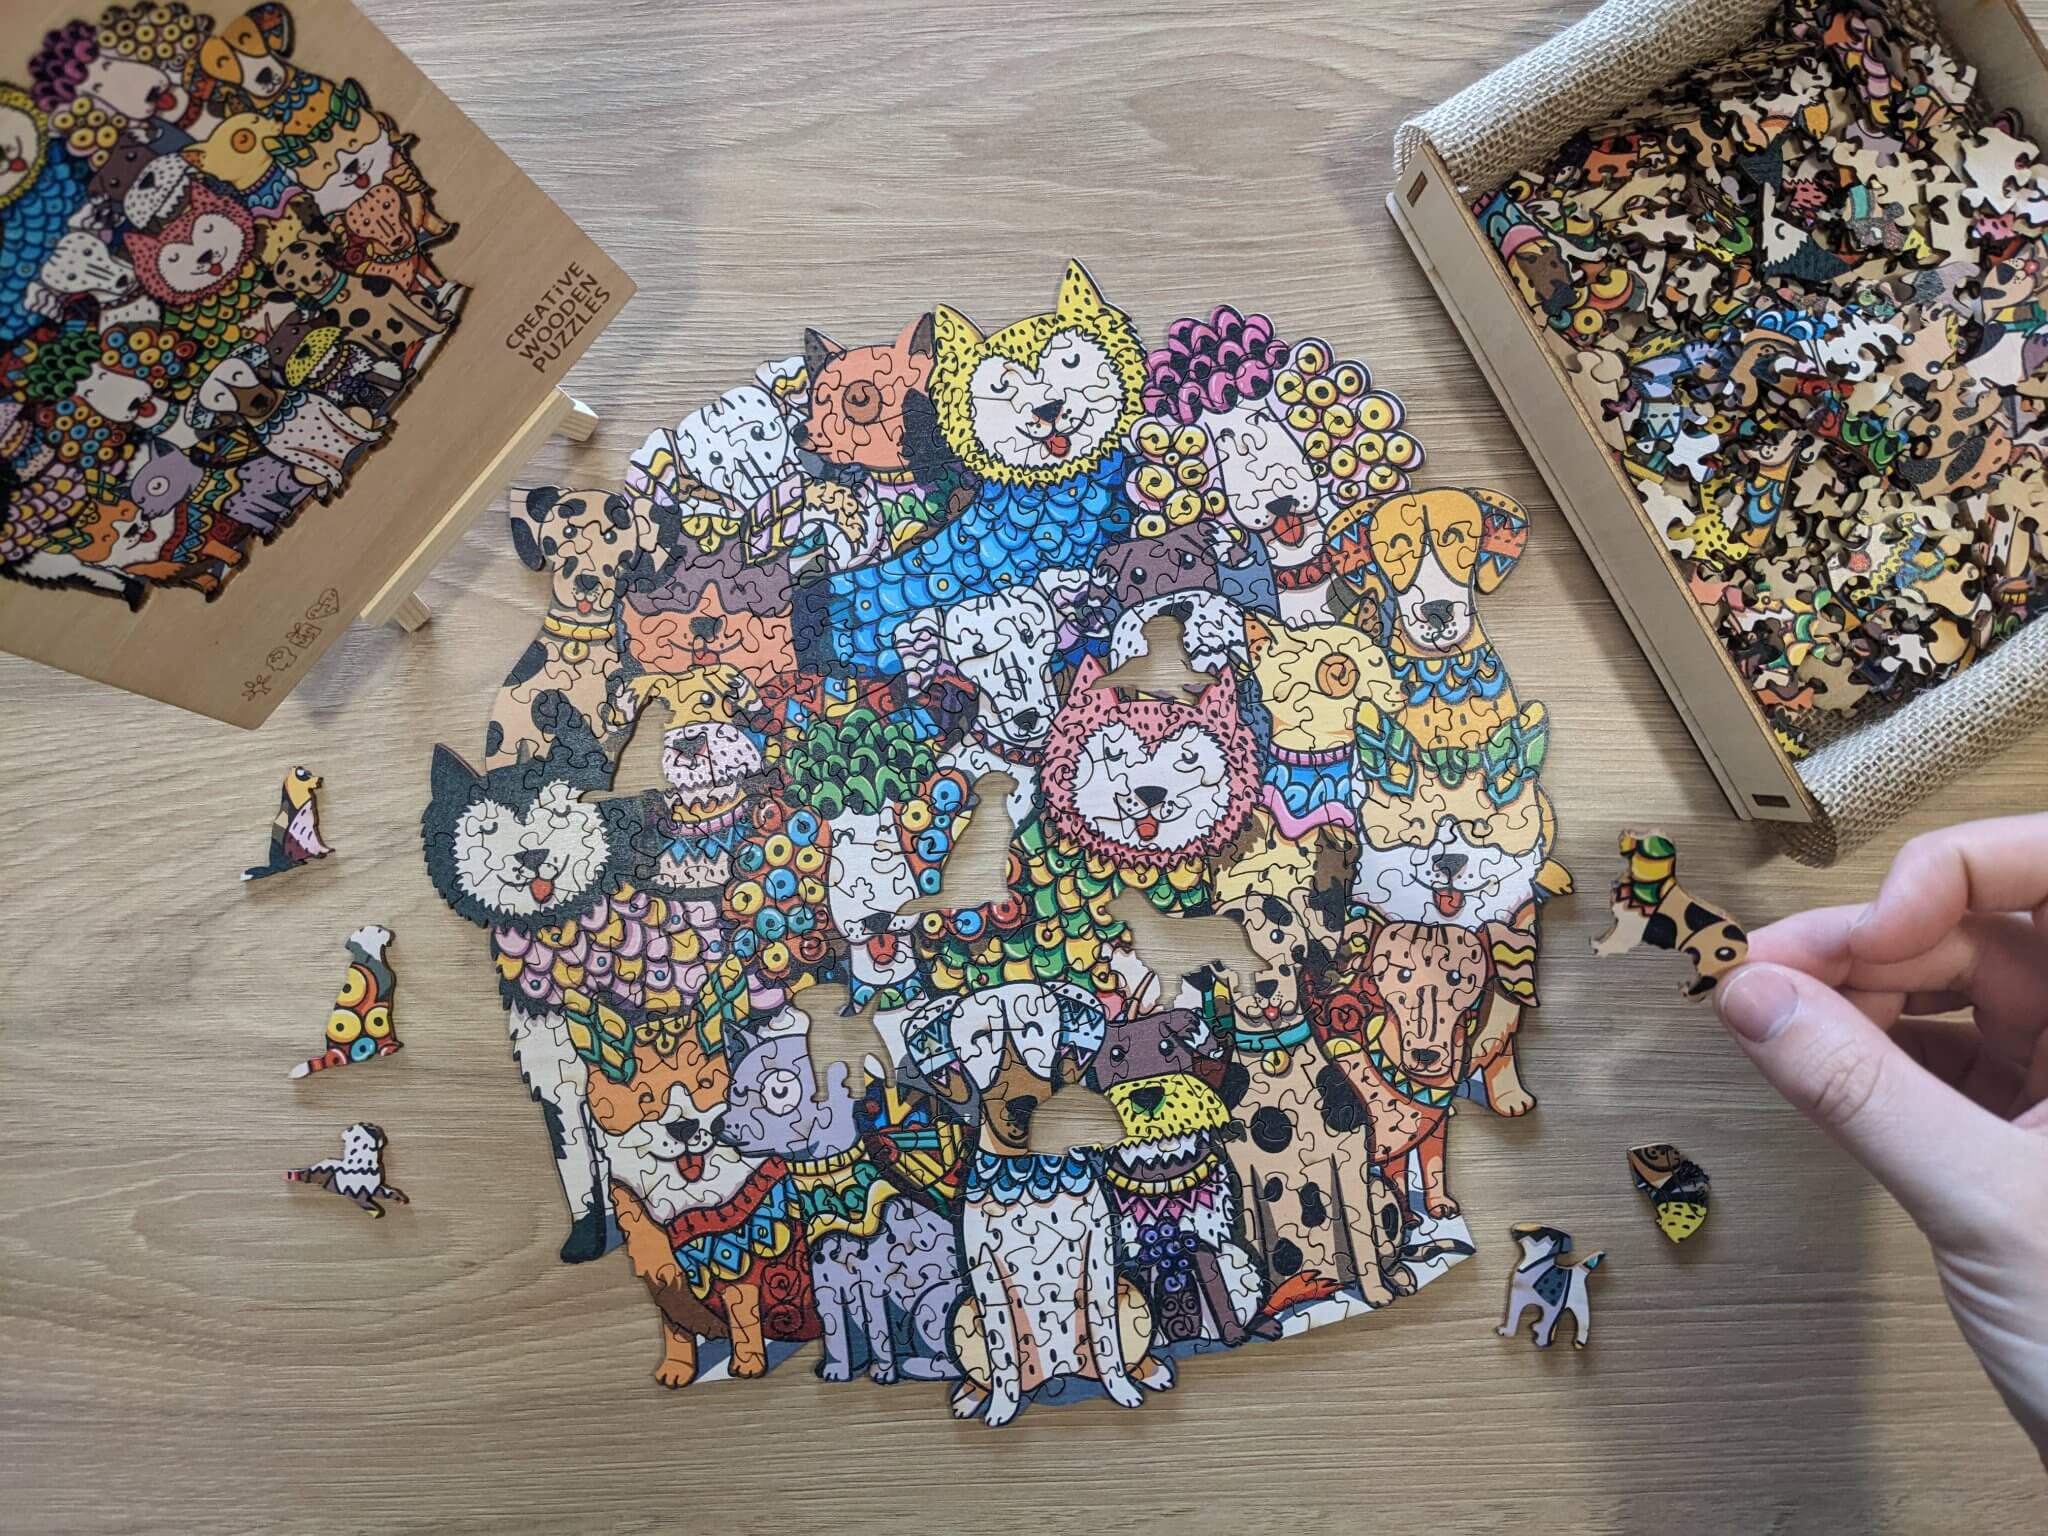 Dřevěné puzzle – Rich Dog